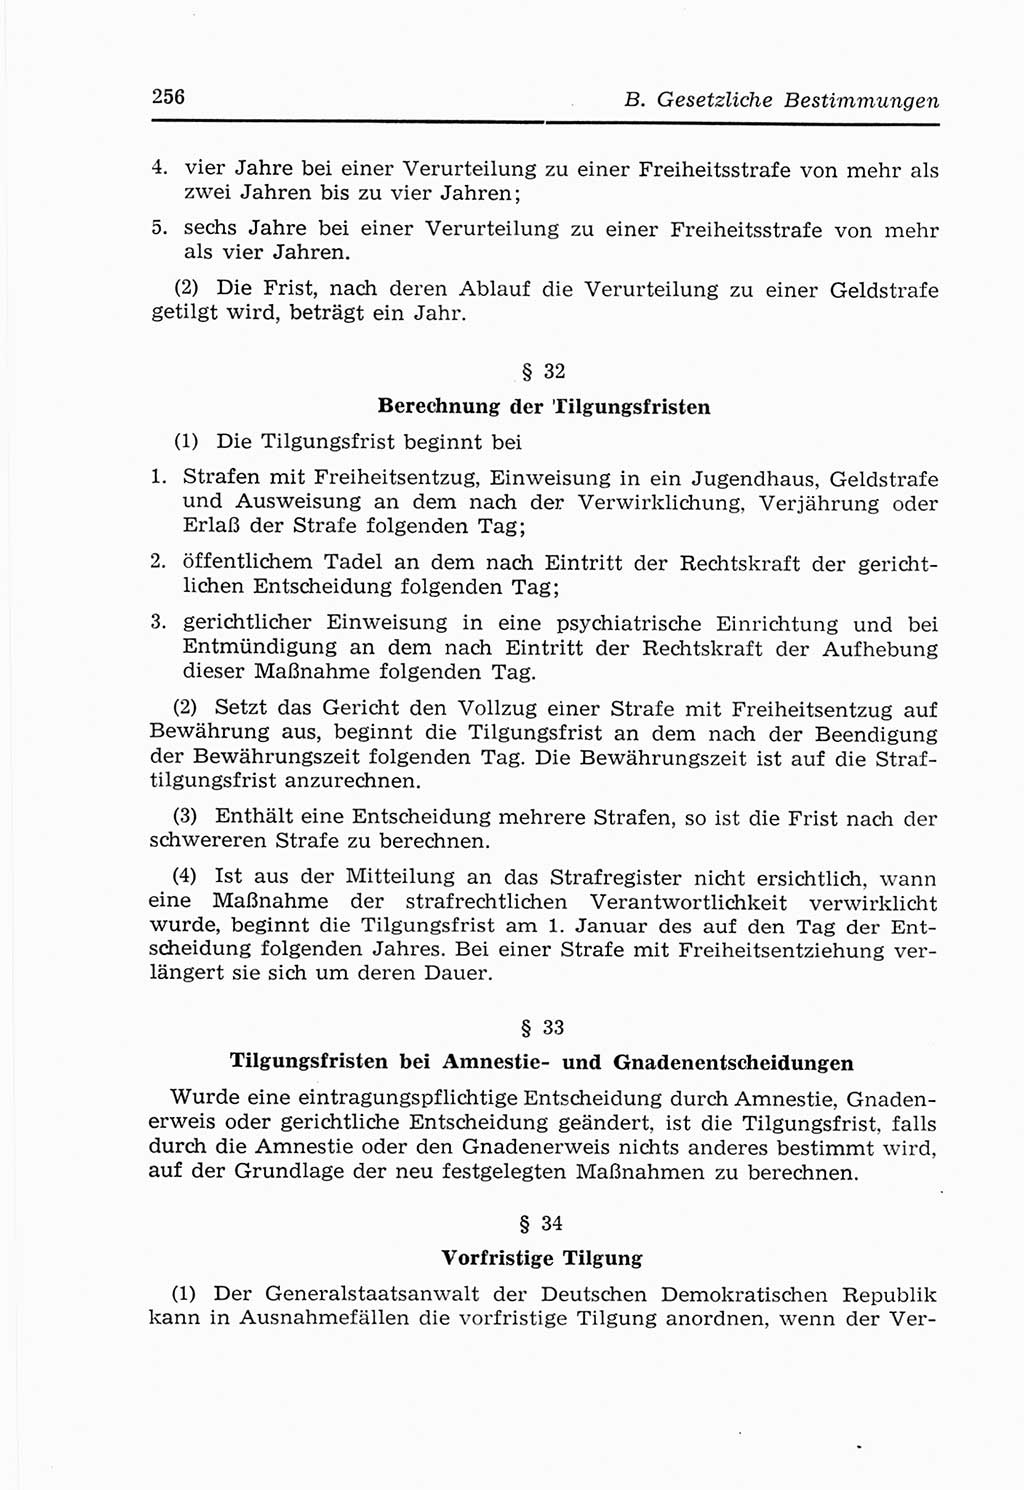 Strafvollzugs- und Wiedereingliederungsgesetz (SVWG) der Deutschen Demokratischen Republik (DDR) 1968, Seite 256 (SVWG DDR 1968, S. 256)